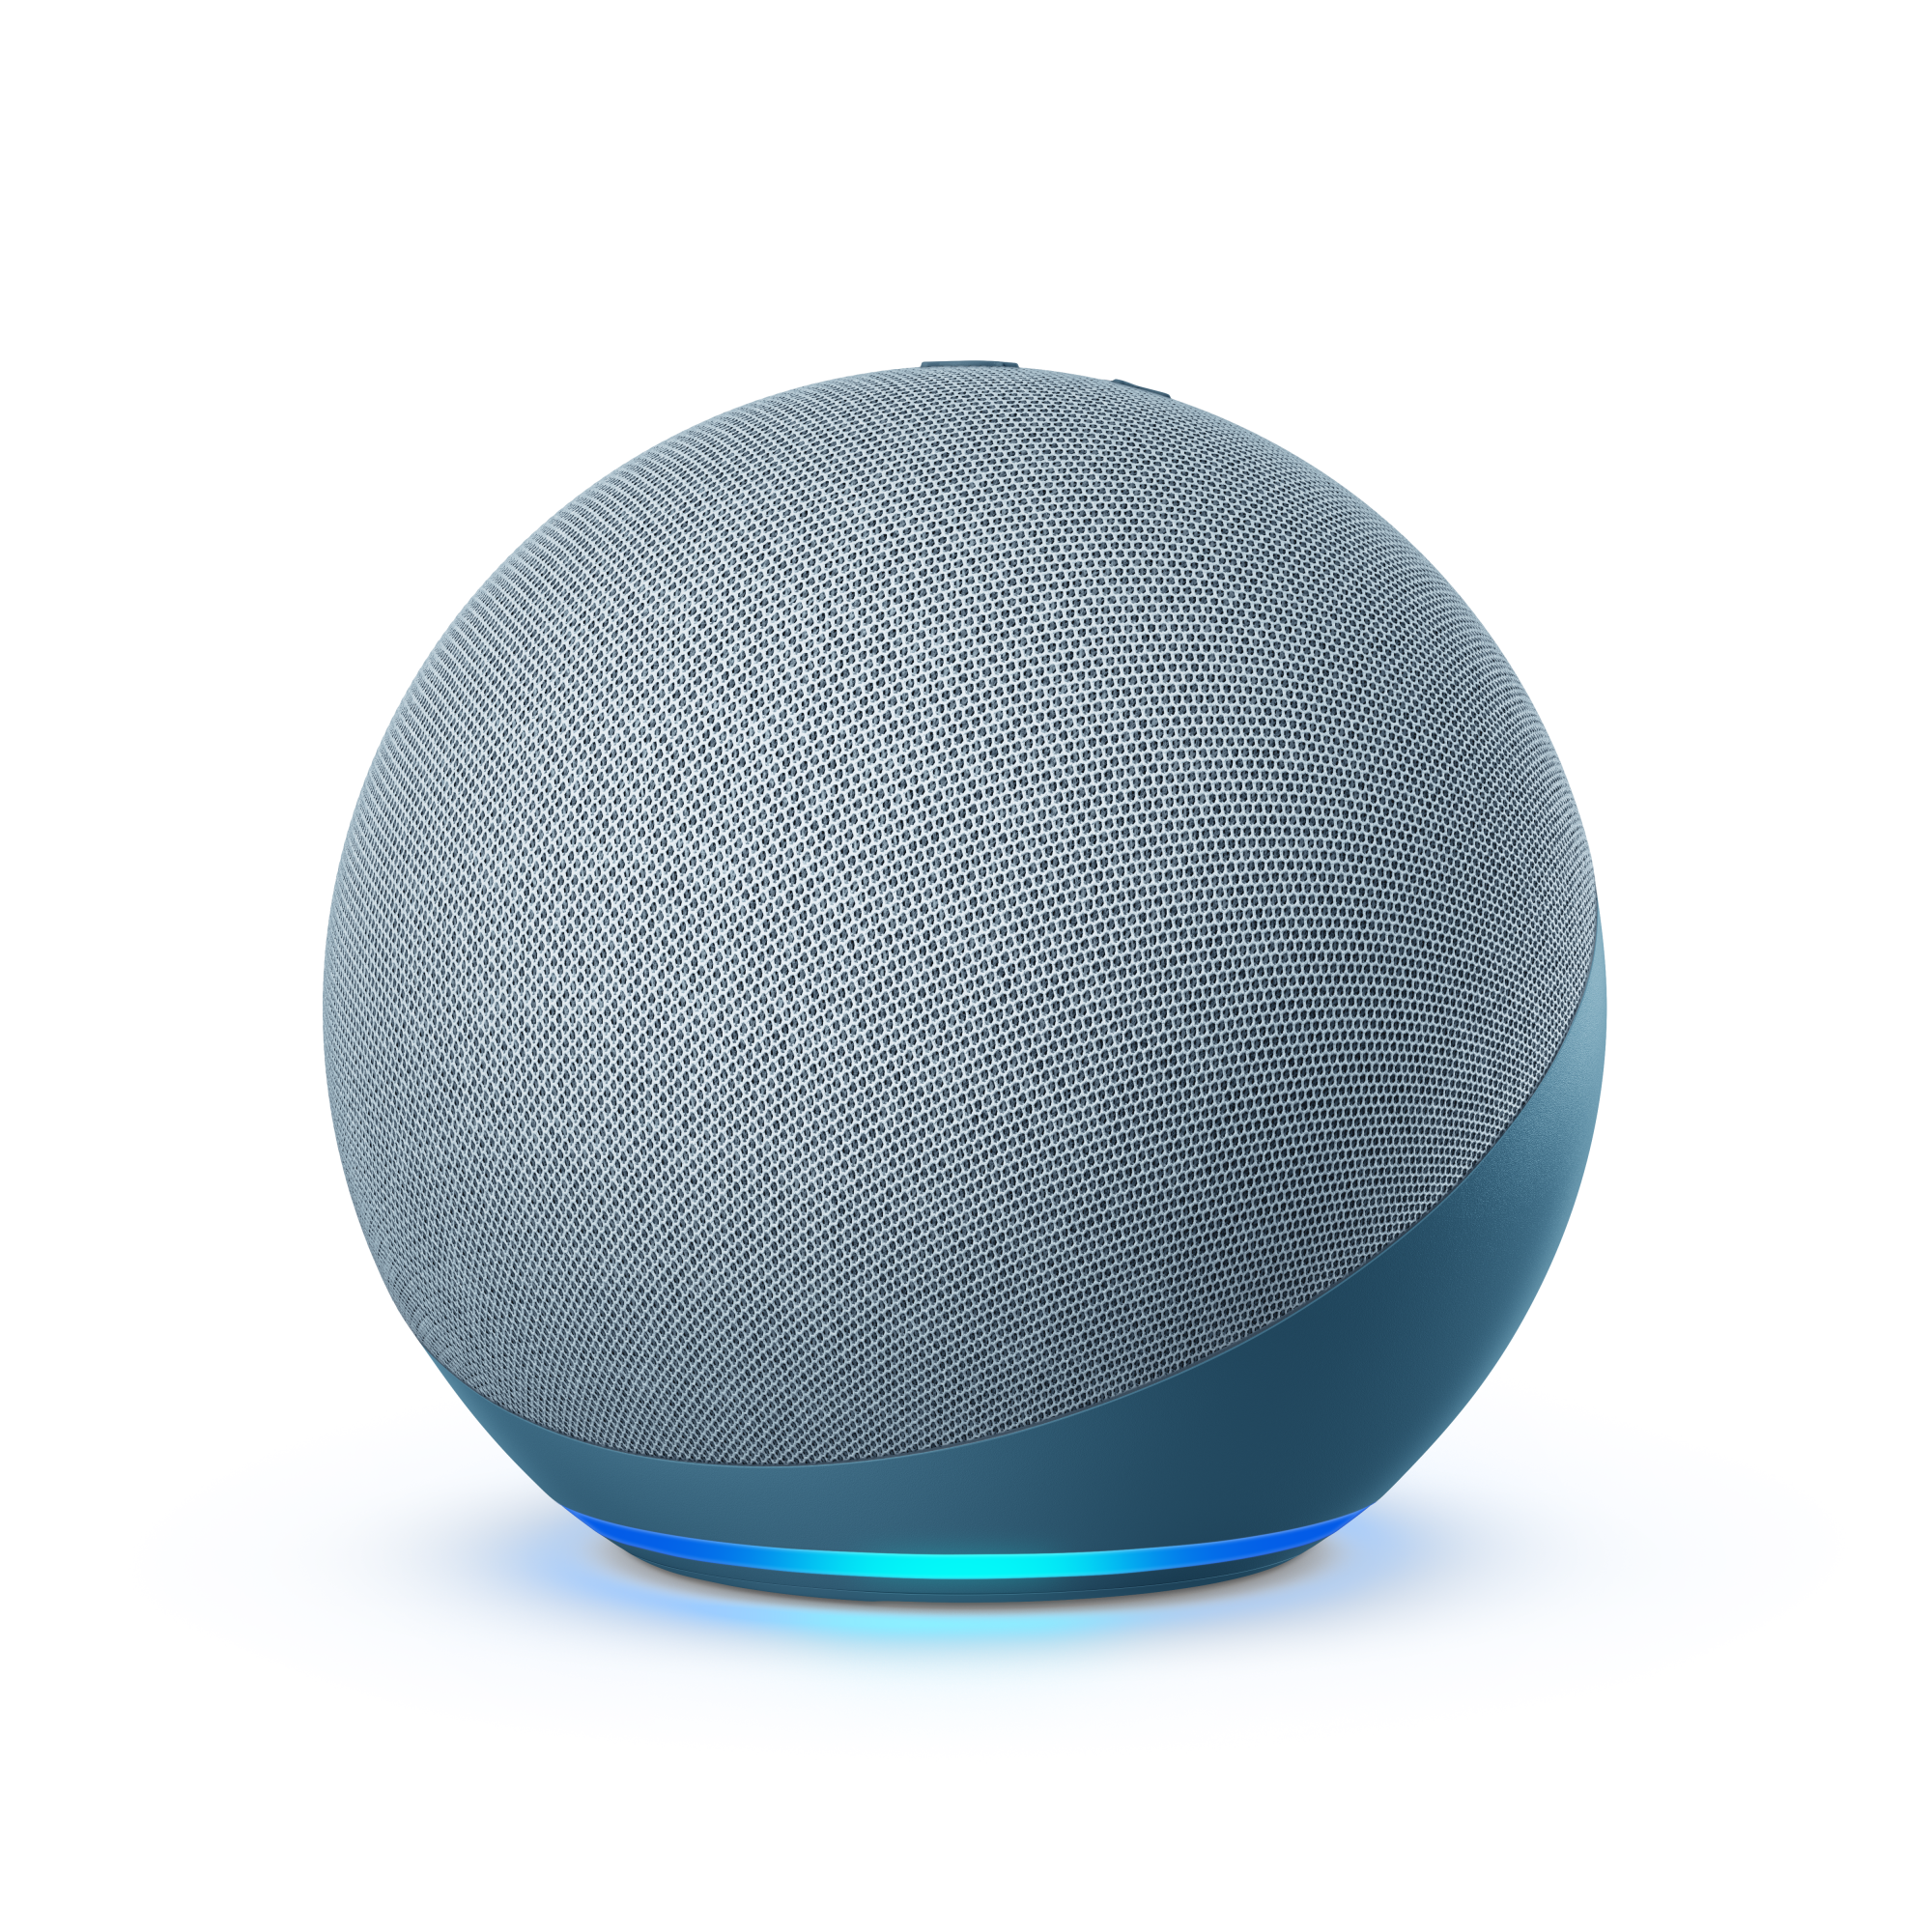 Gray spherical Echo speaker with light blue light emanating from the bottom.